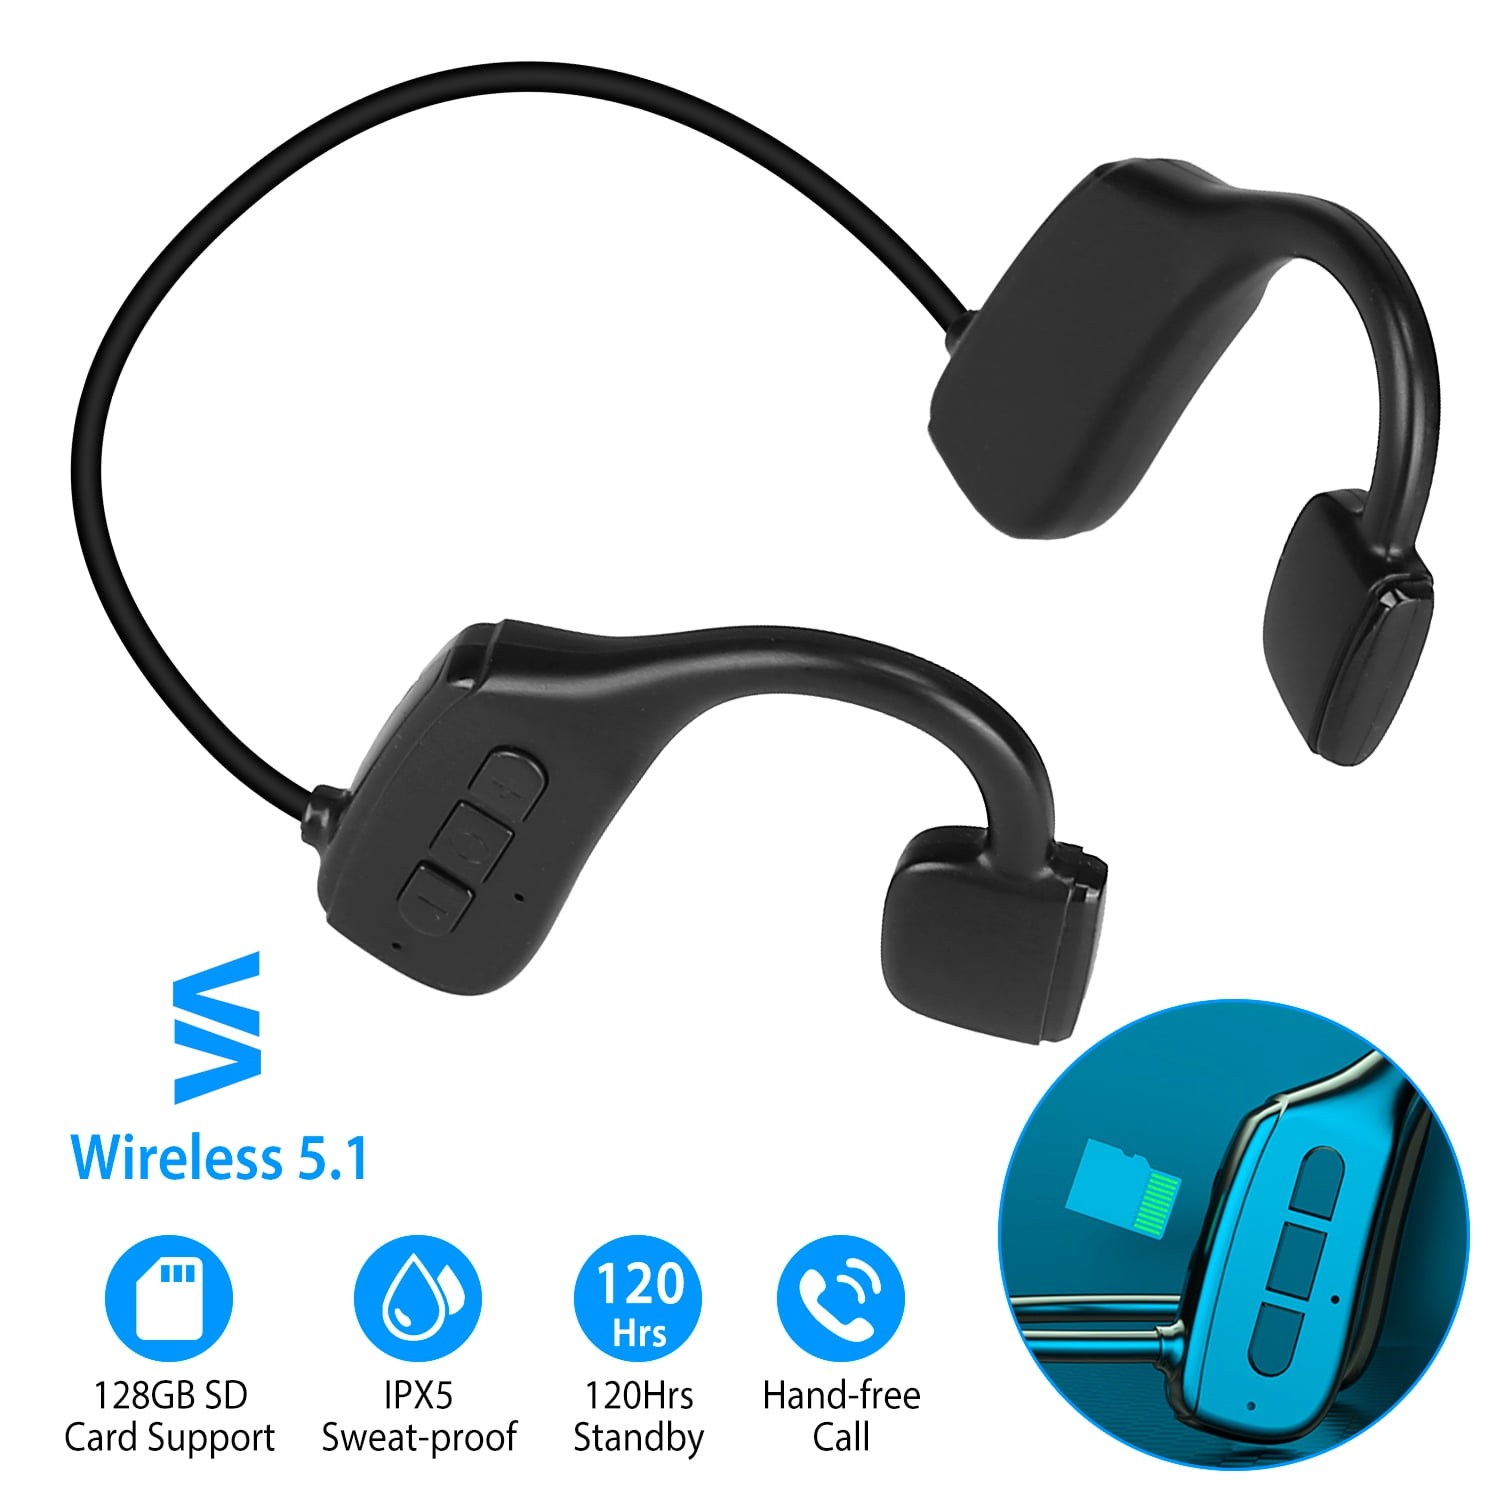 Bone Conduction Headphones Wireless 5.1, Wireless Open Ear Headphones with  Mic IPX5 Sweatproof, Waterproof Sports Headset for